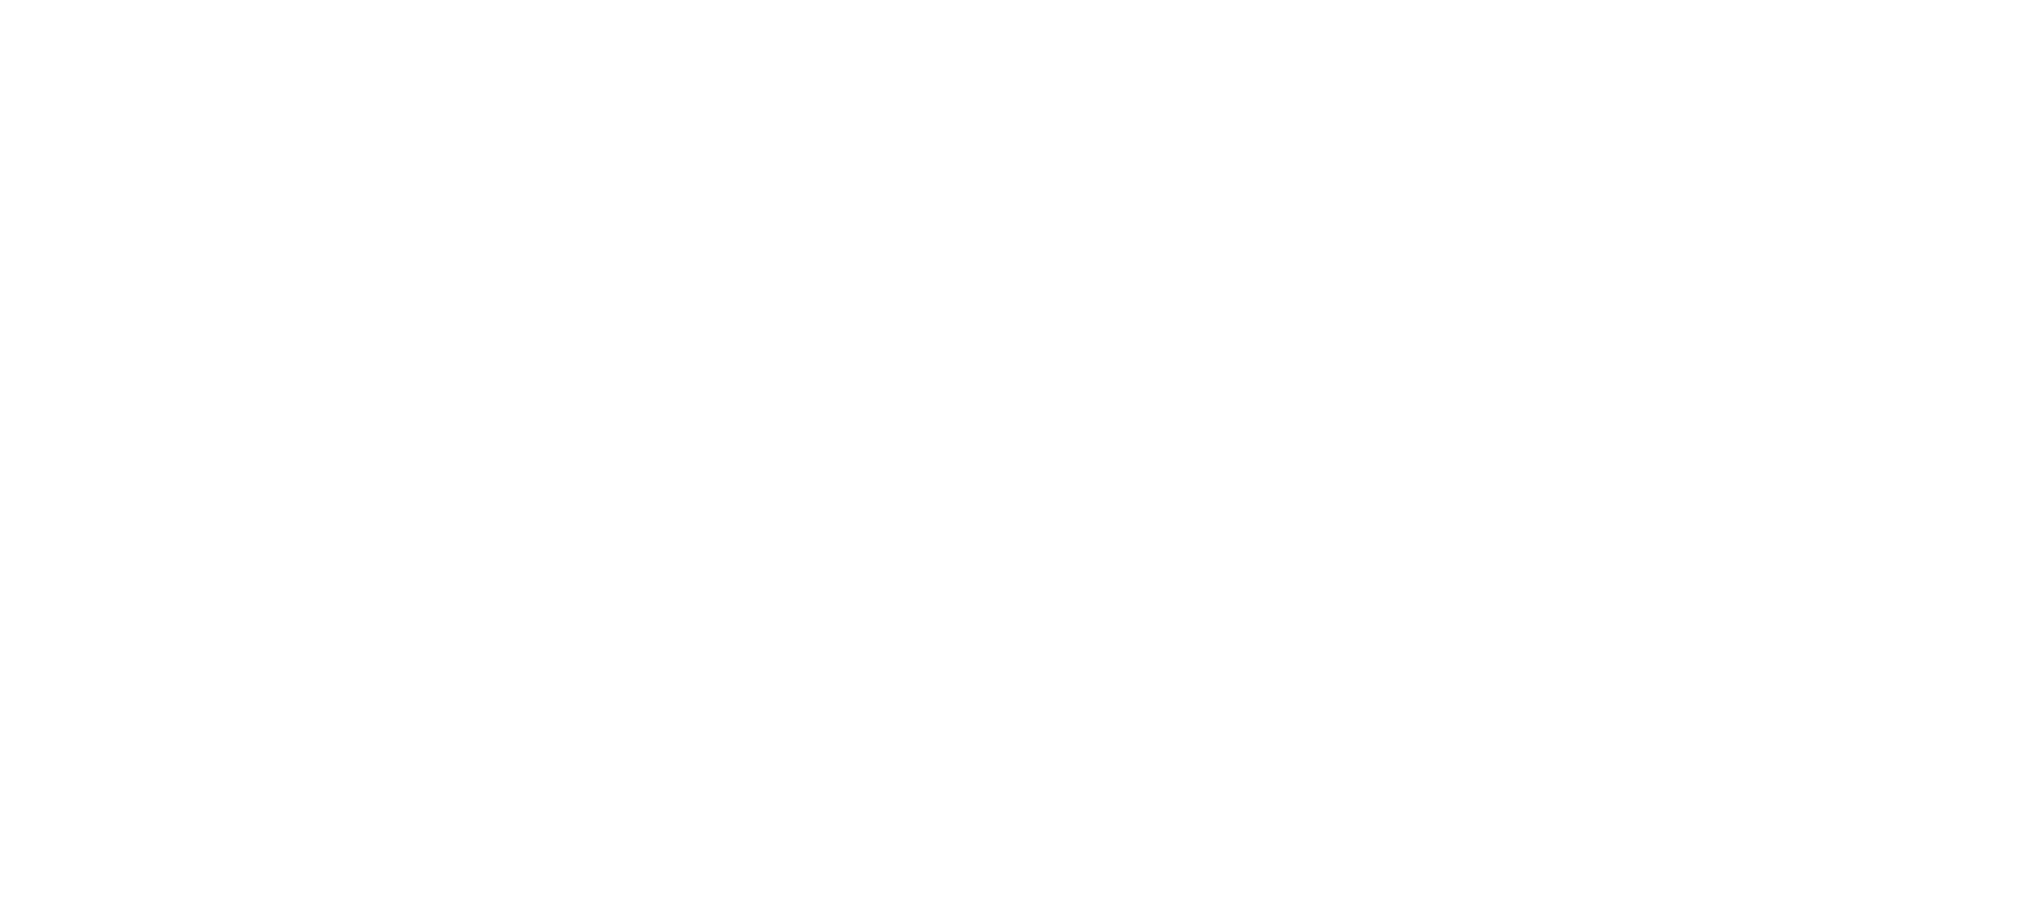 logotype, logo, codetown logo, code town logo, code town logotype